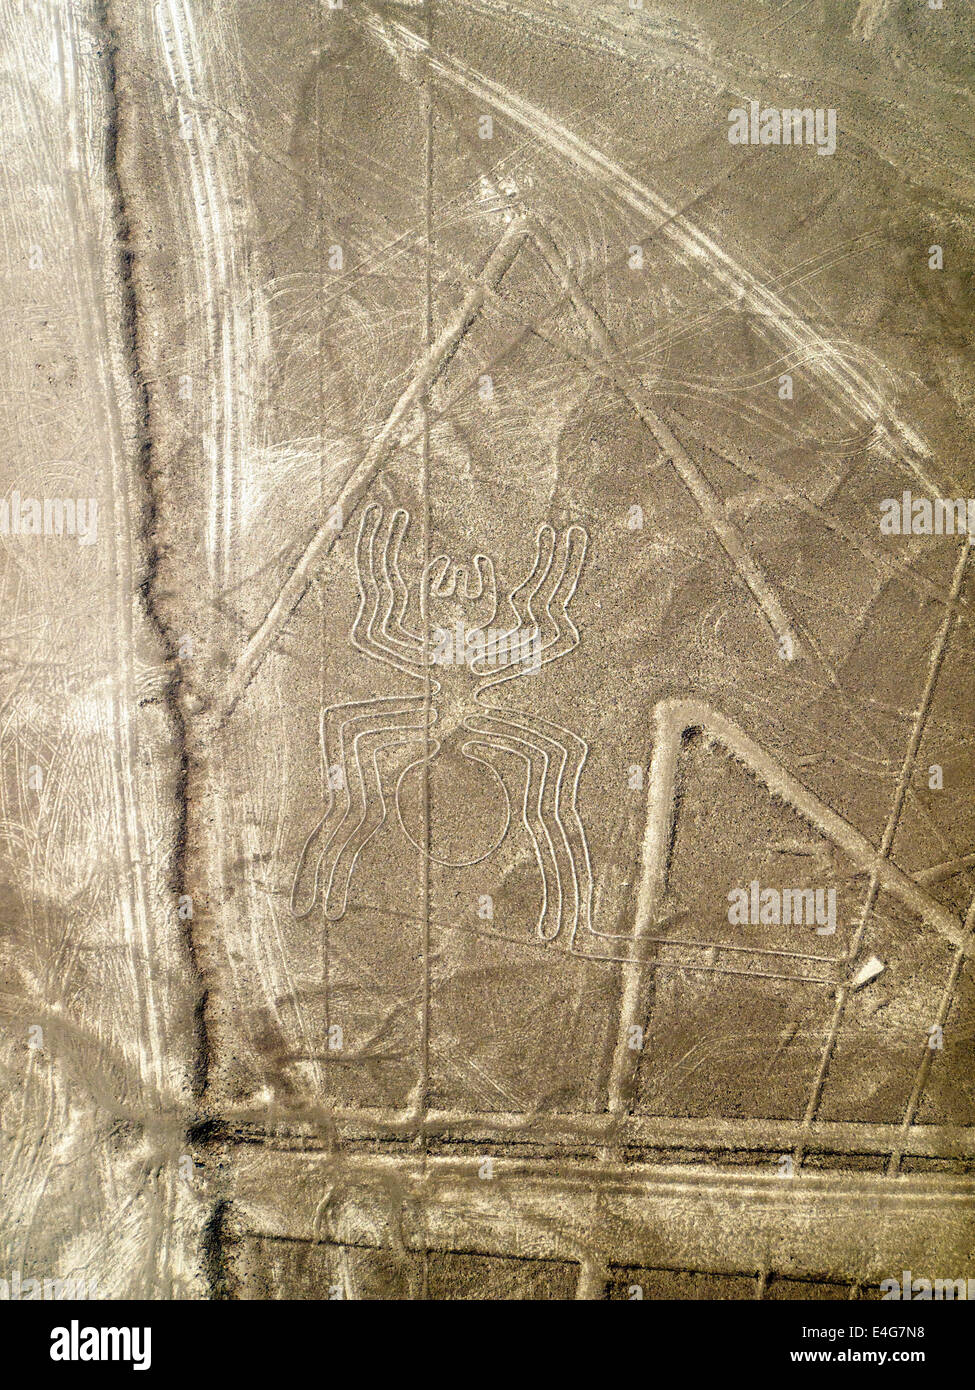 Arana (spider), Lignes et géoglyphes de Nazca, UNESCO World Heritage Site - Pérou Banque D'Images